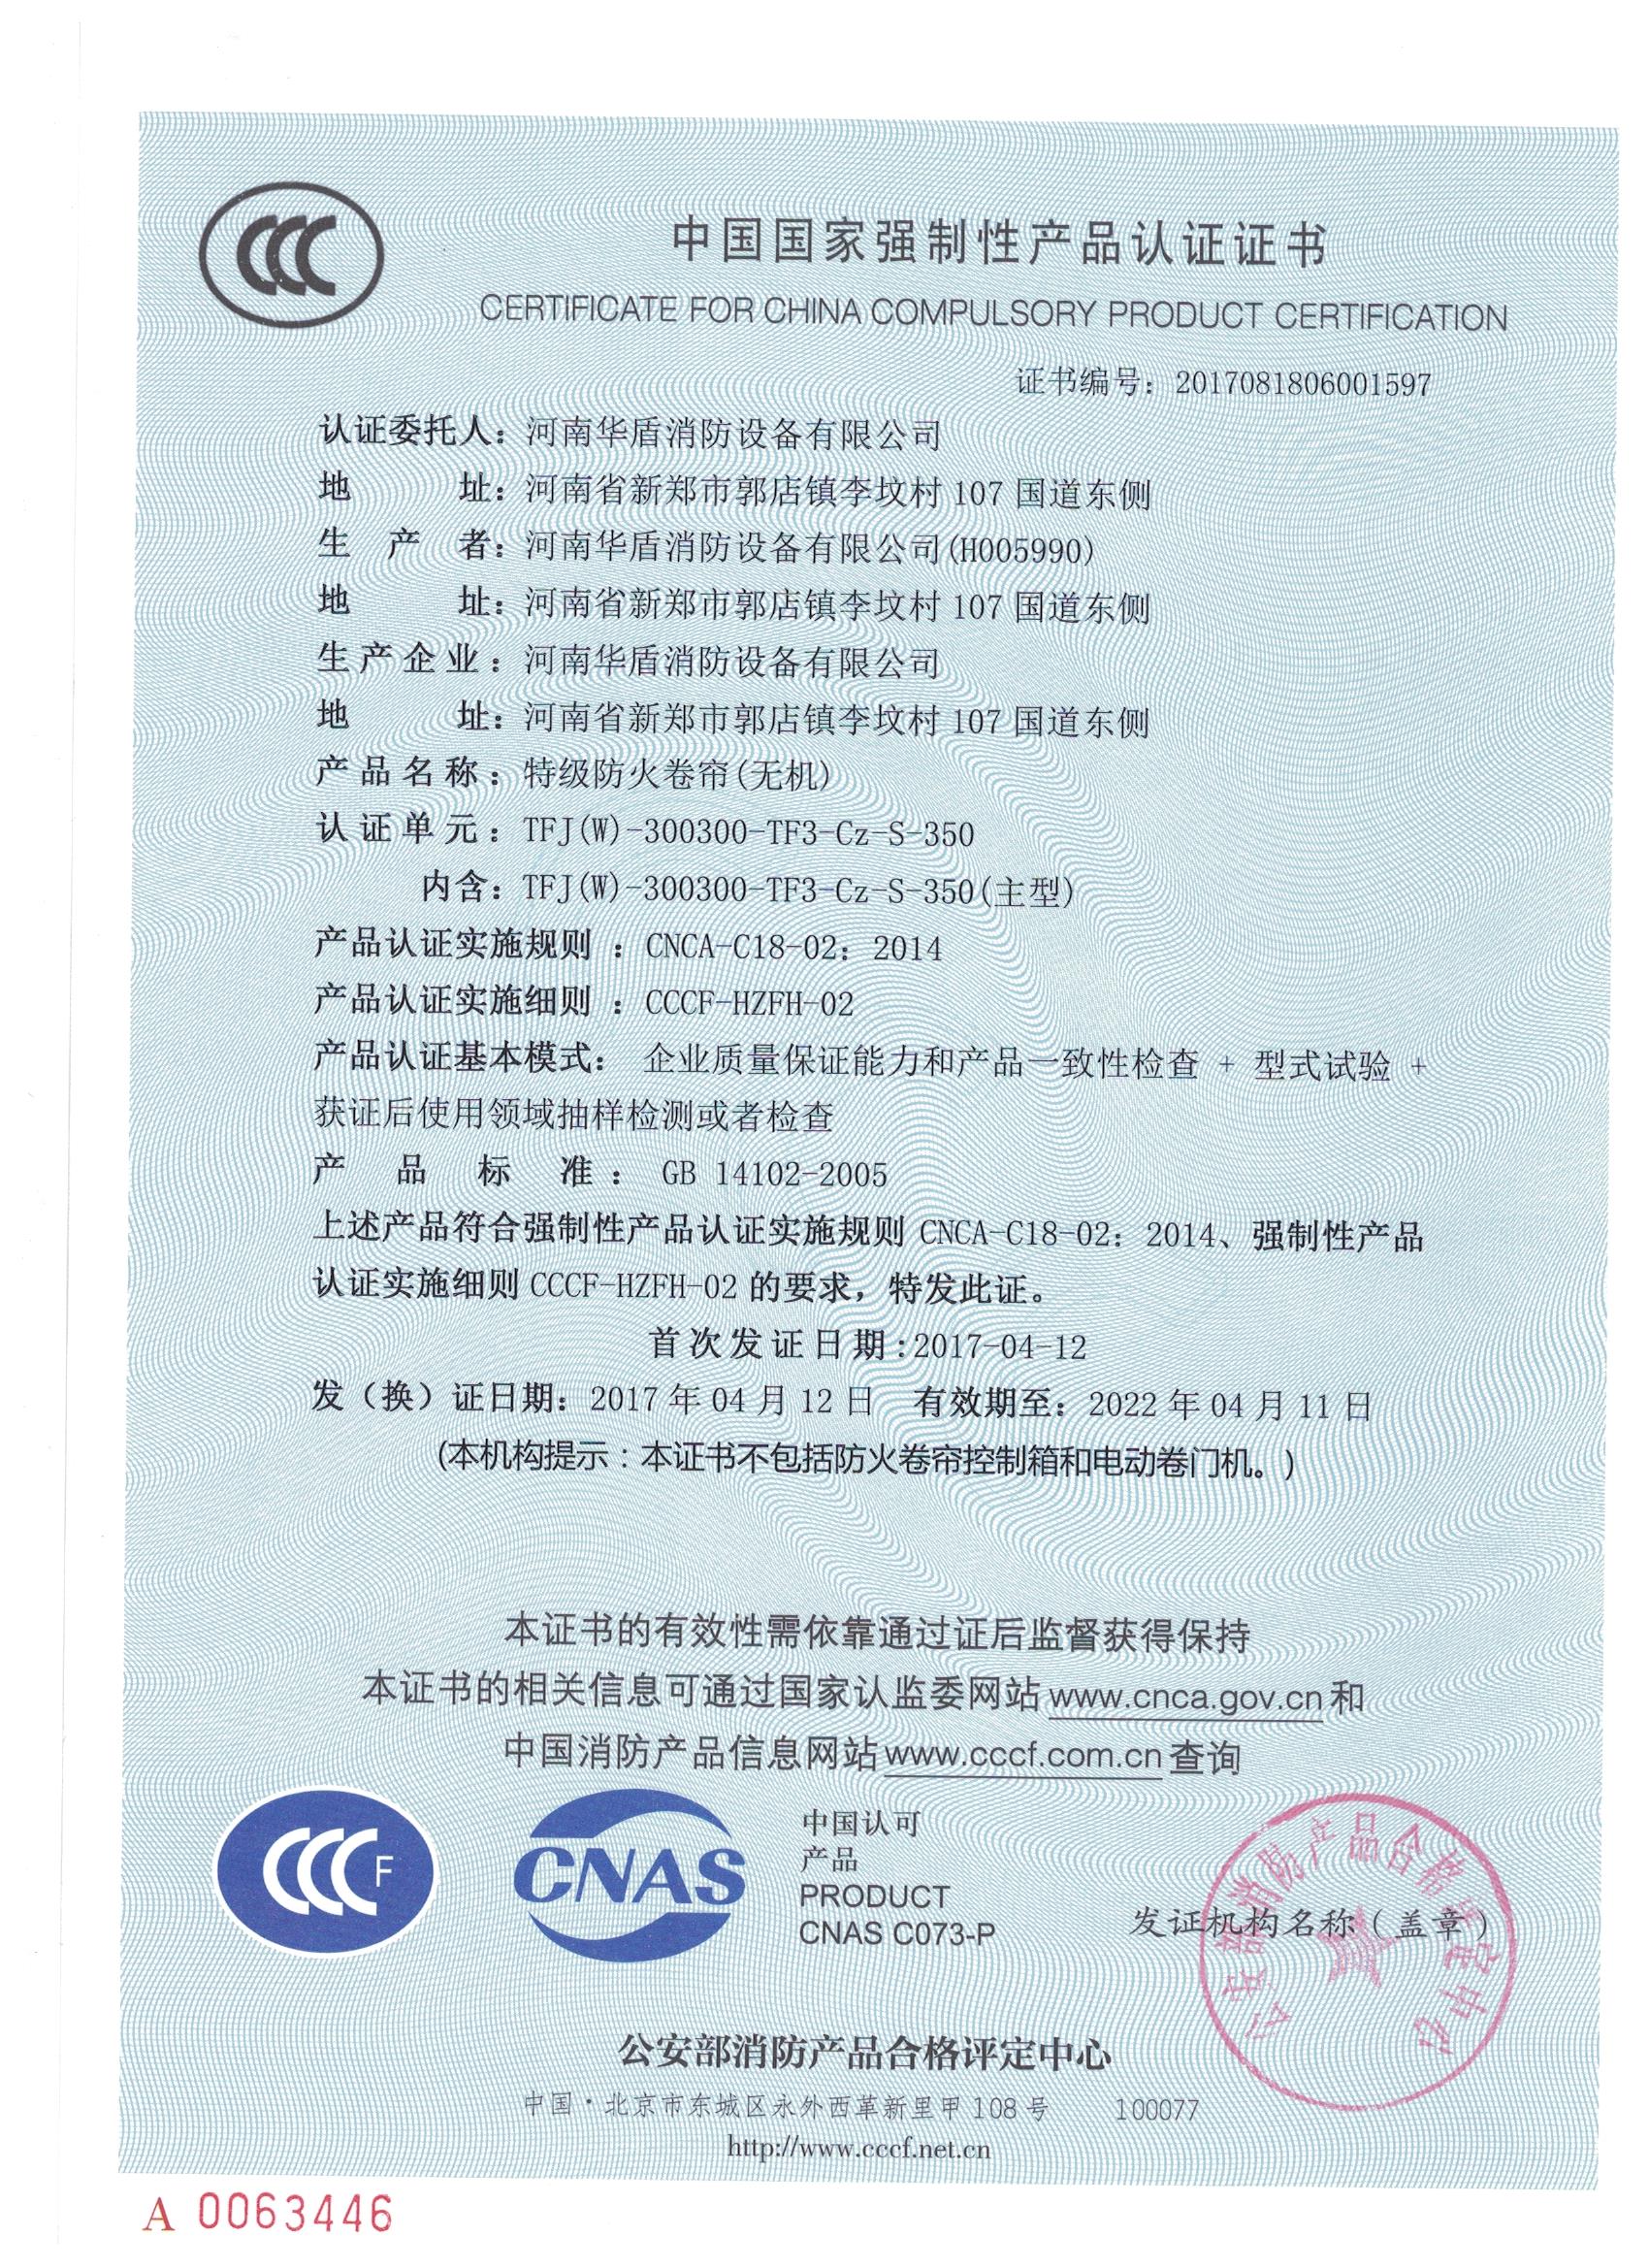 郑州TFJ（W）-300300-TF3-Cz-S-350-3C证书